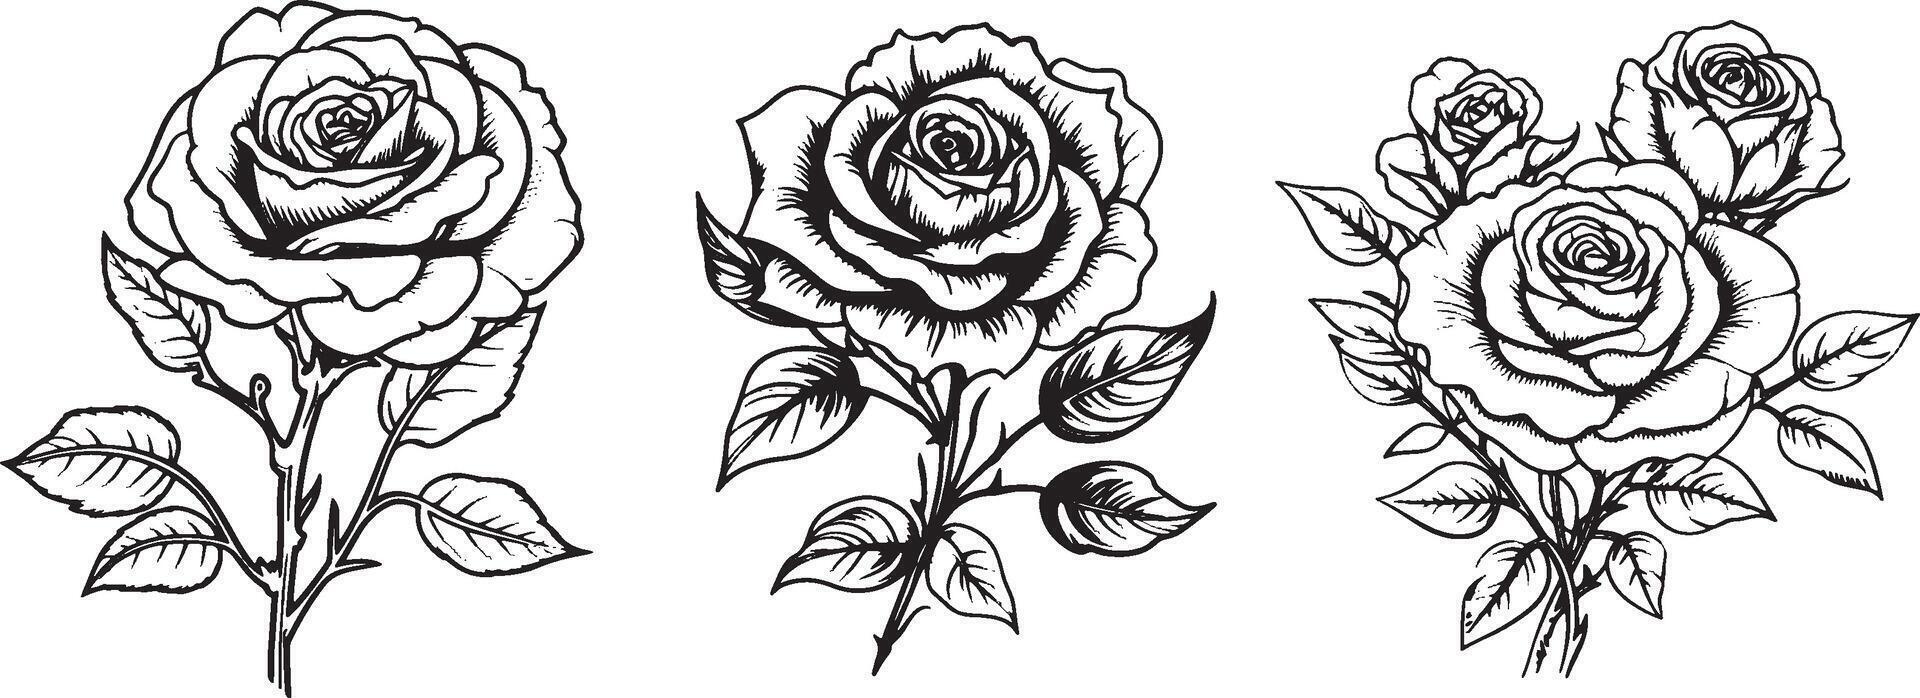 roos bloem lijn kunst logo sjabloon clip art vector